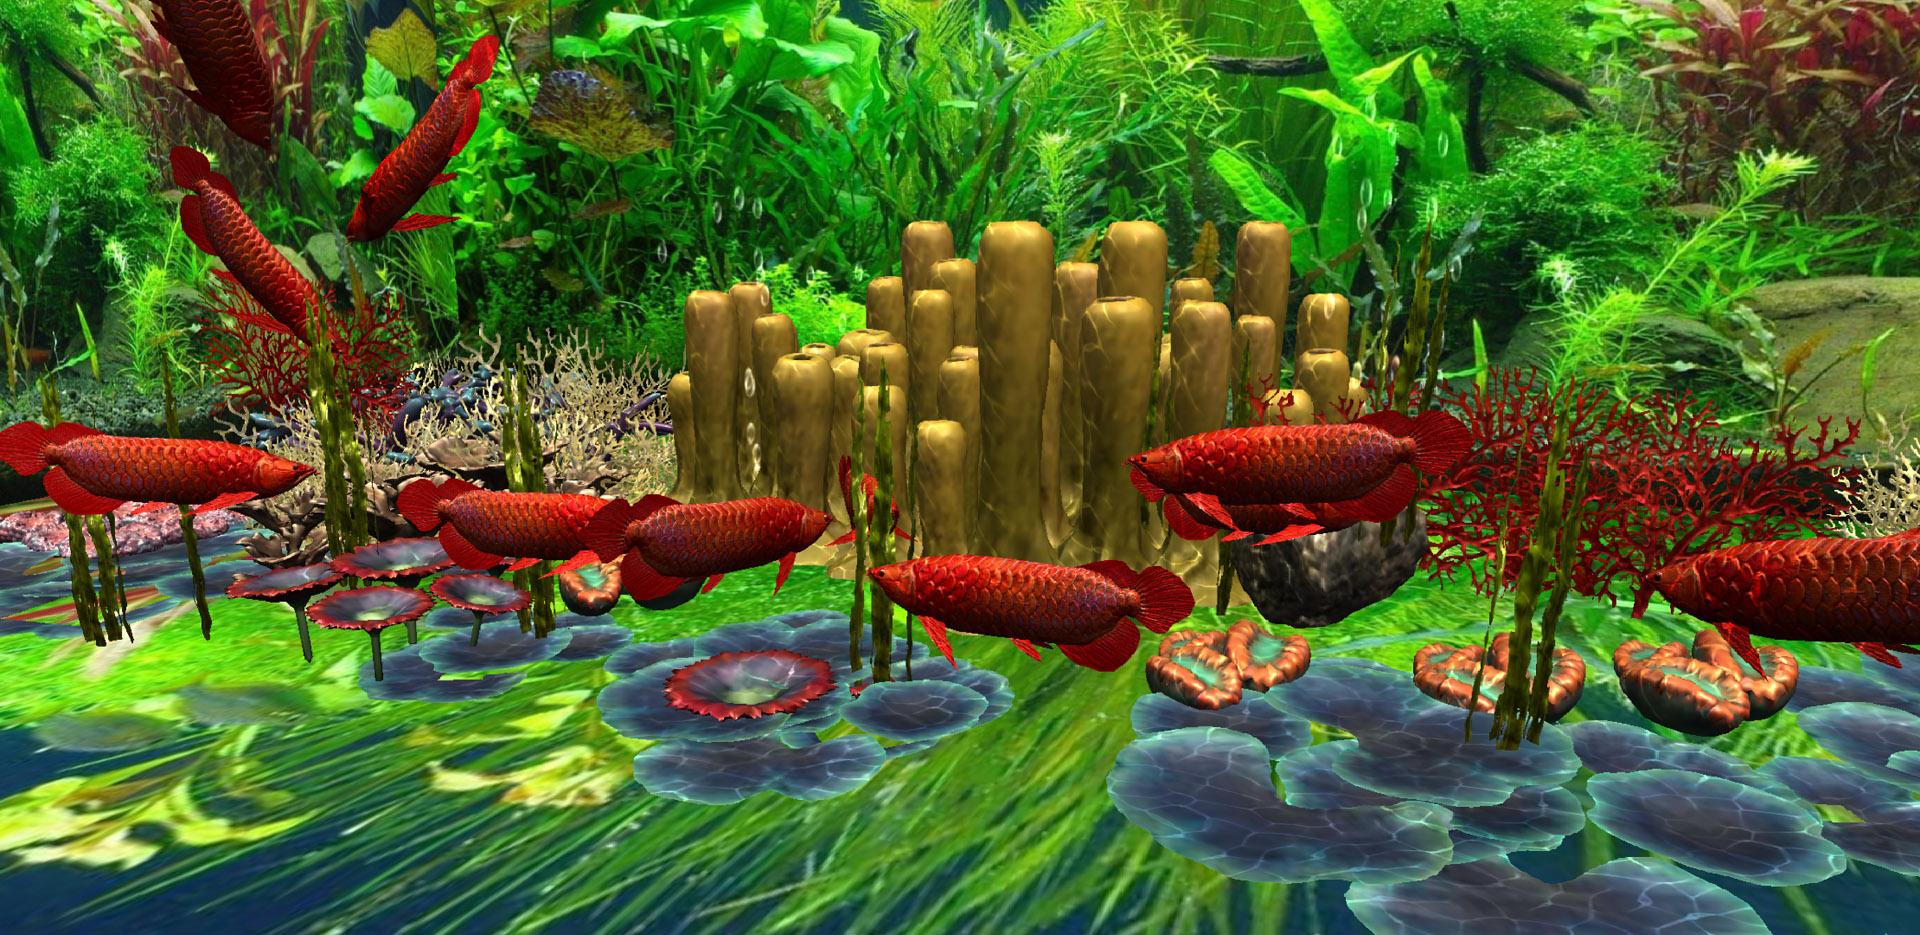 Hãy làm mới màn hình điện thoại của bạn với Live Wallpaper 3D Arowana đỏ. Với hình ảnh chân thật và sống động, cá Arowana đỏ sẽ mang lại sự bình yên và may mắn cho gia đình và công việc của bạn. Hãy thưởng thức hình ảnh đầy màu sắc này để tạo nên một không gian sống động và phong cách!